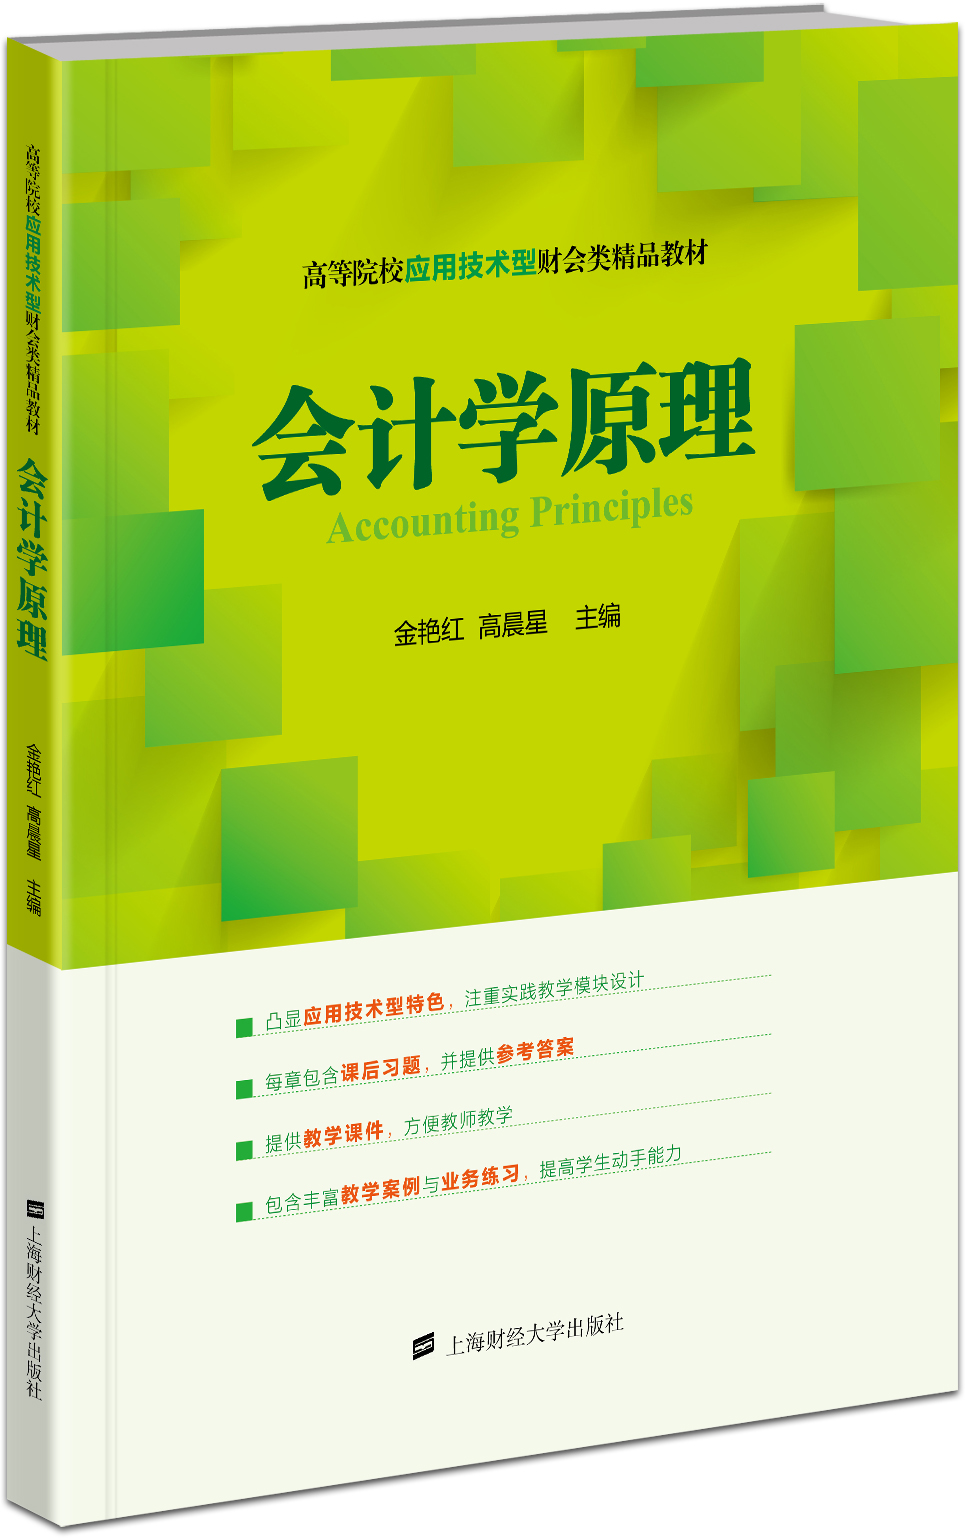 會計學原理(2016年上海財經大學出版社出版書籍)